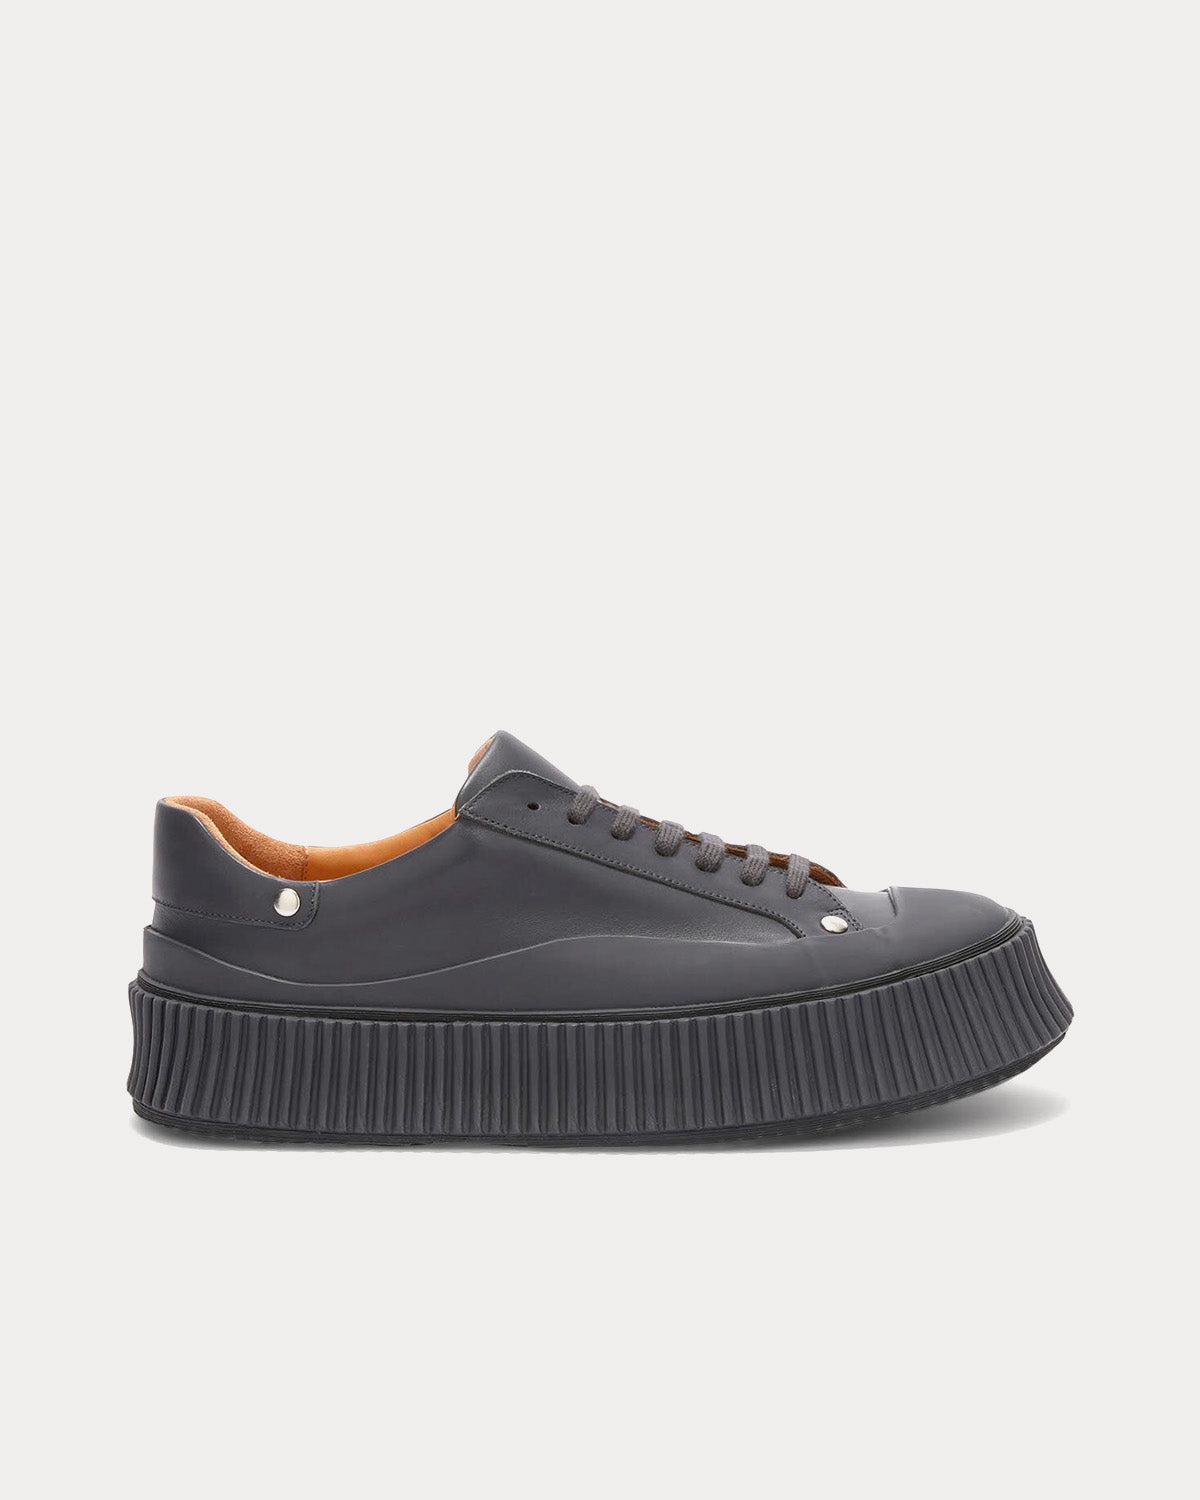 Jil Sander - Platform Leather Dark Grey Low Top Sneakers